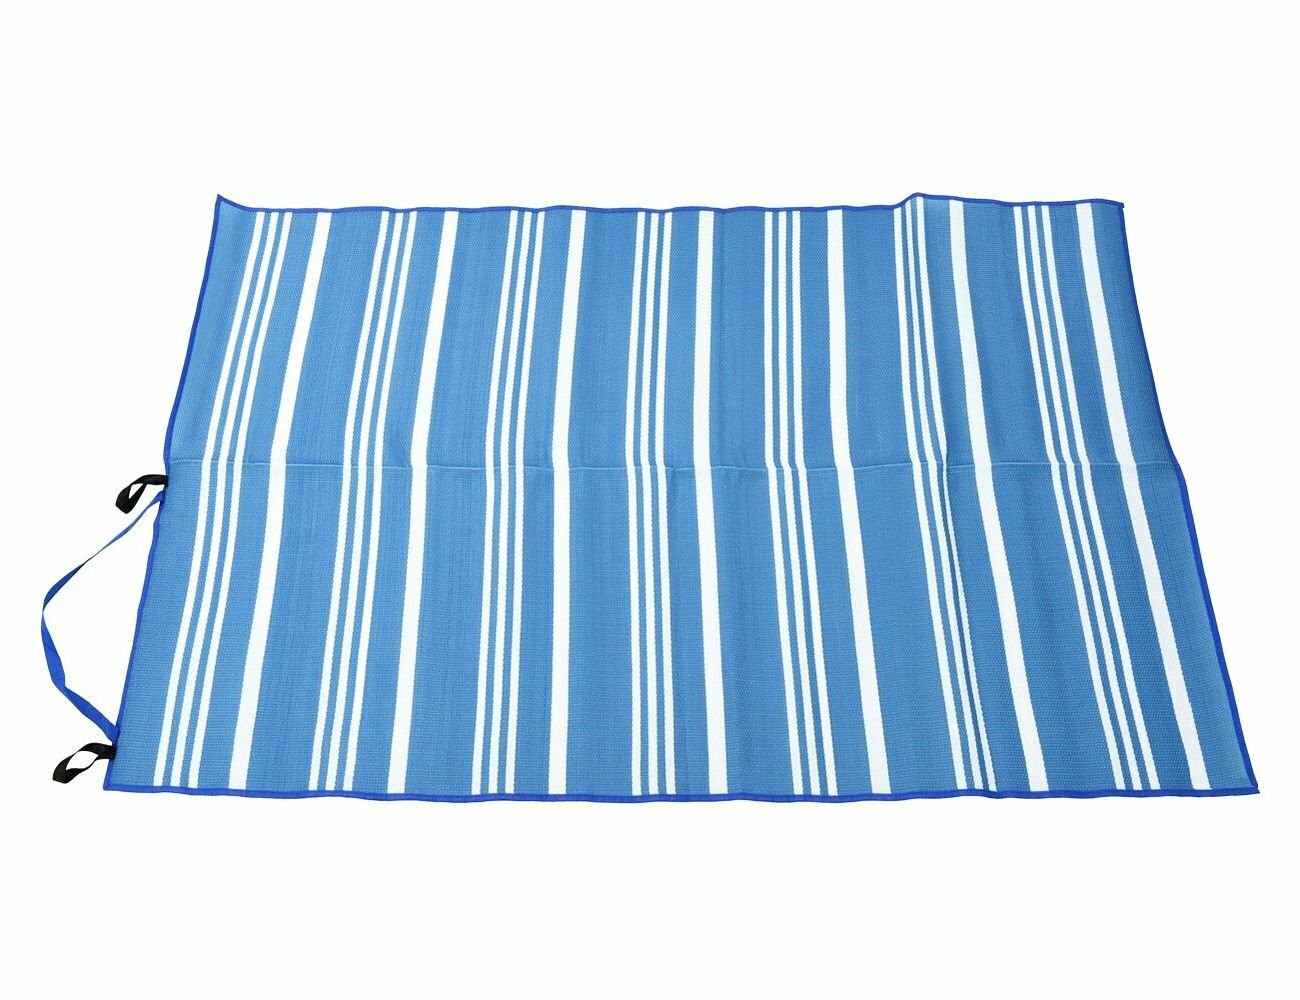 Пляжный коврик марэ брайт, синий, полипропилен и текстиль, 180х120 см, Koopman International 836300560-3